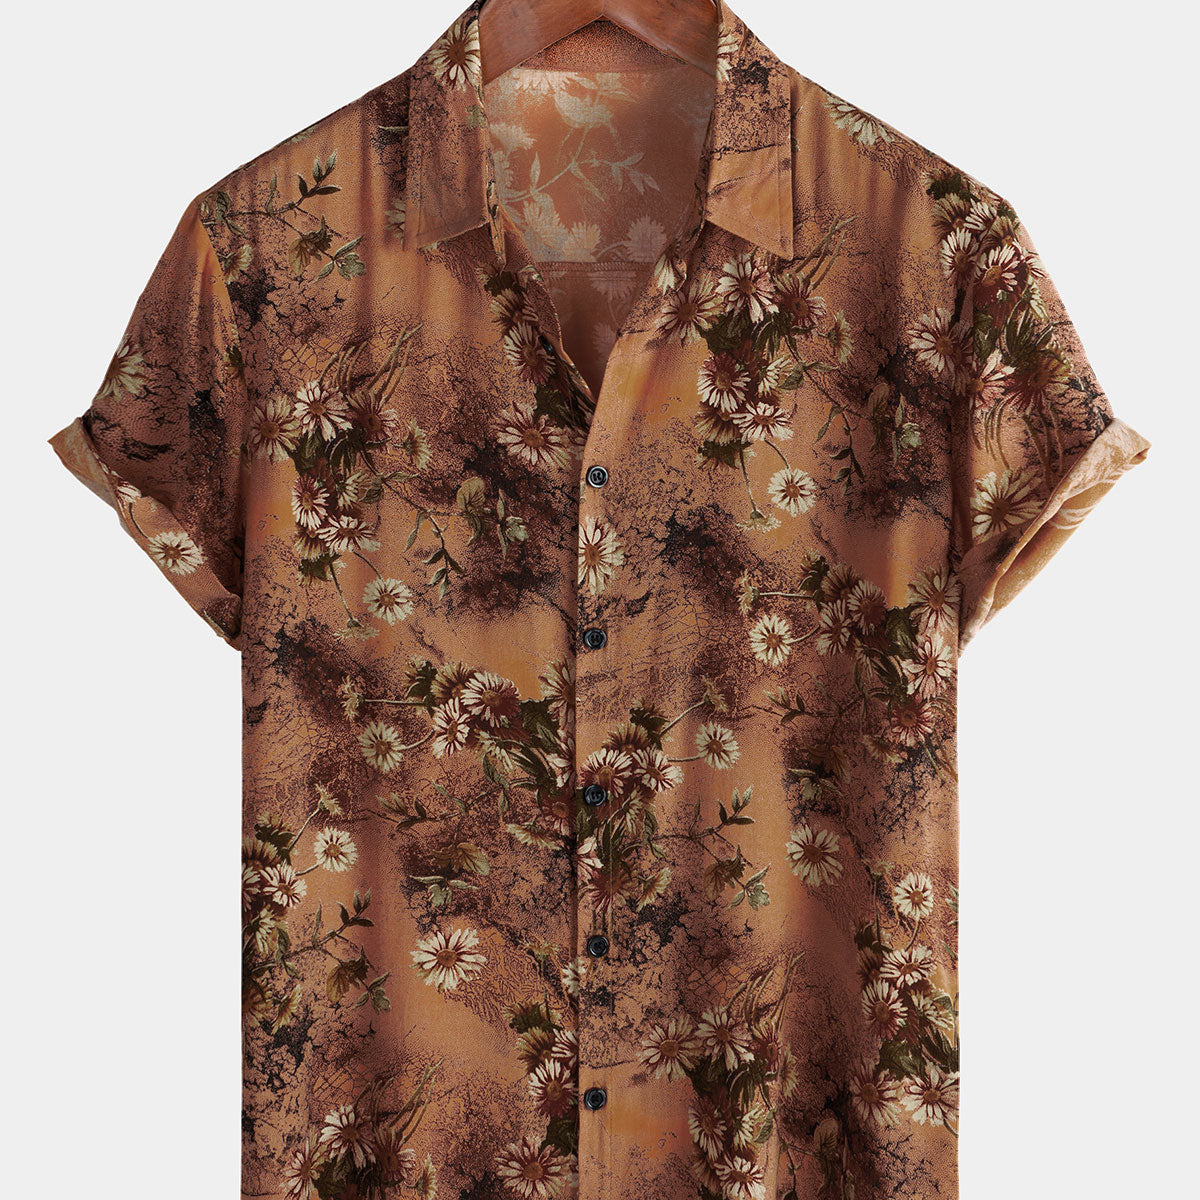 Chemise à manches courtes pour hommes, rétro, floral, marron, vacances d'été